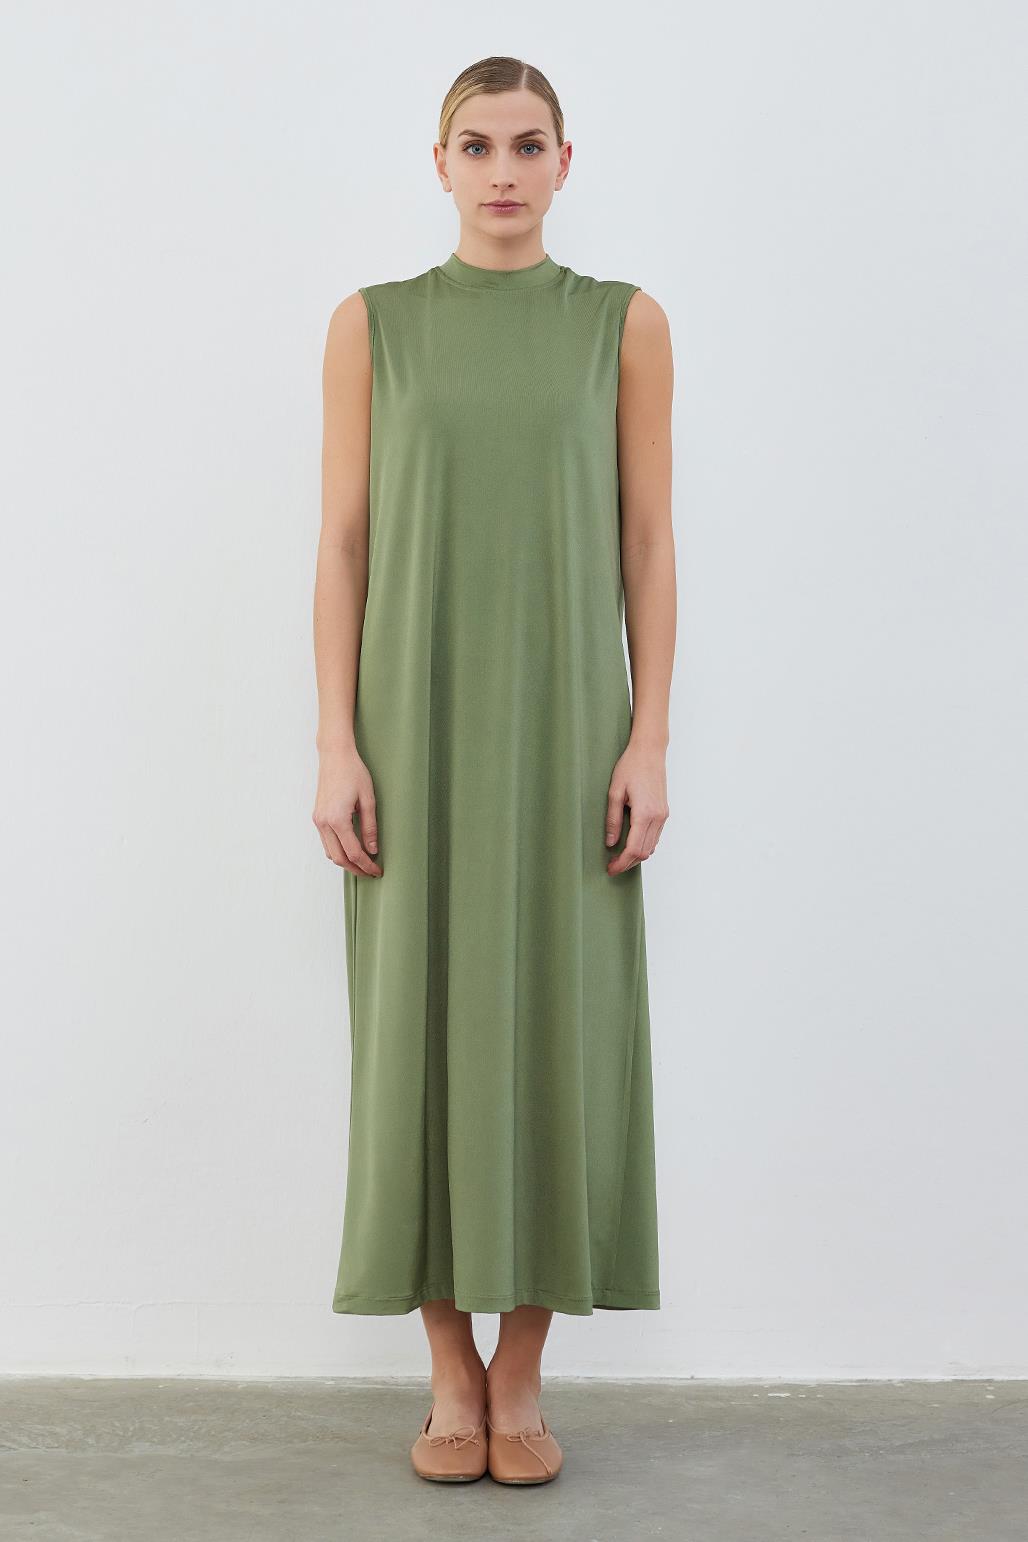 Silk Knitted Sleeveless Dress Khaki Green